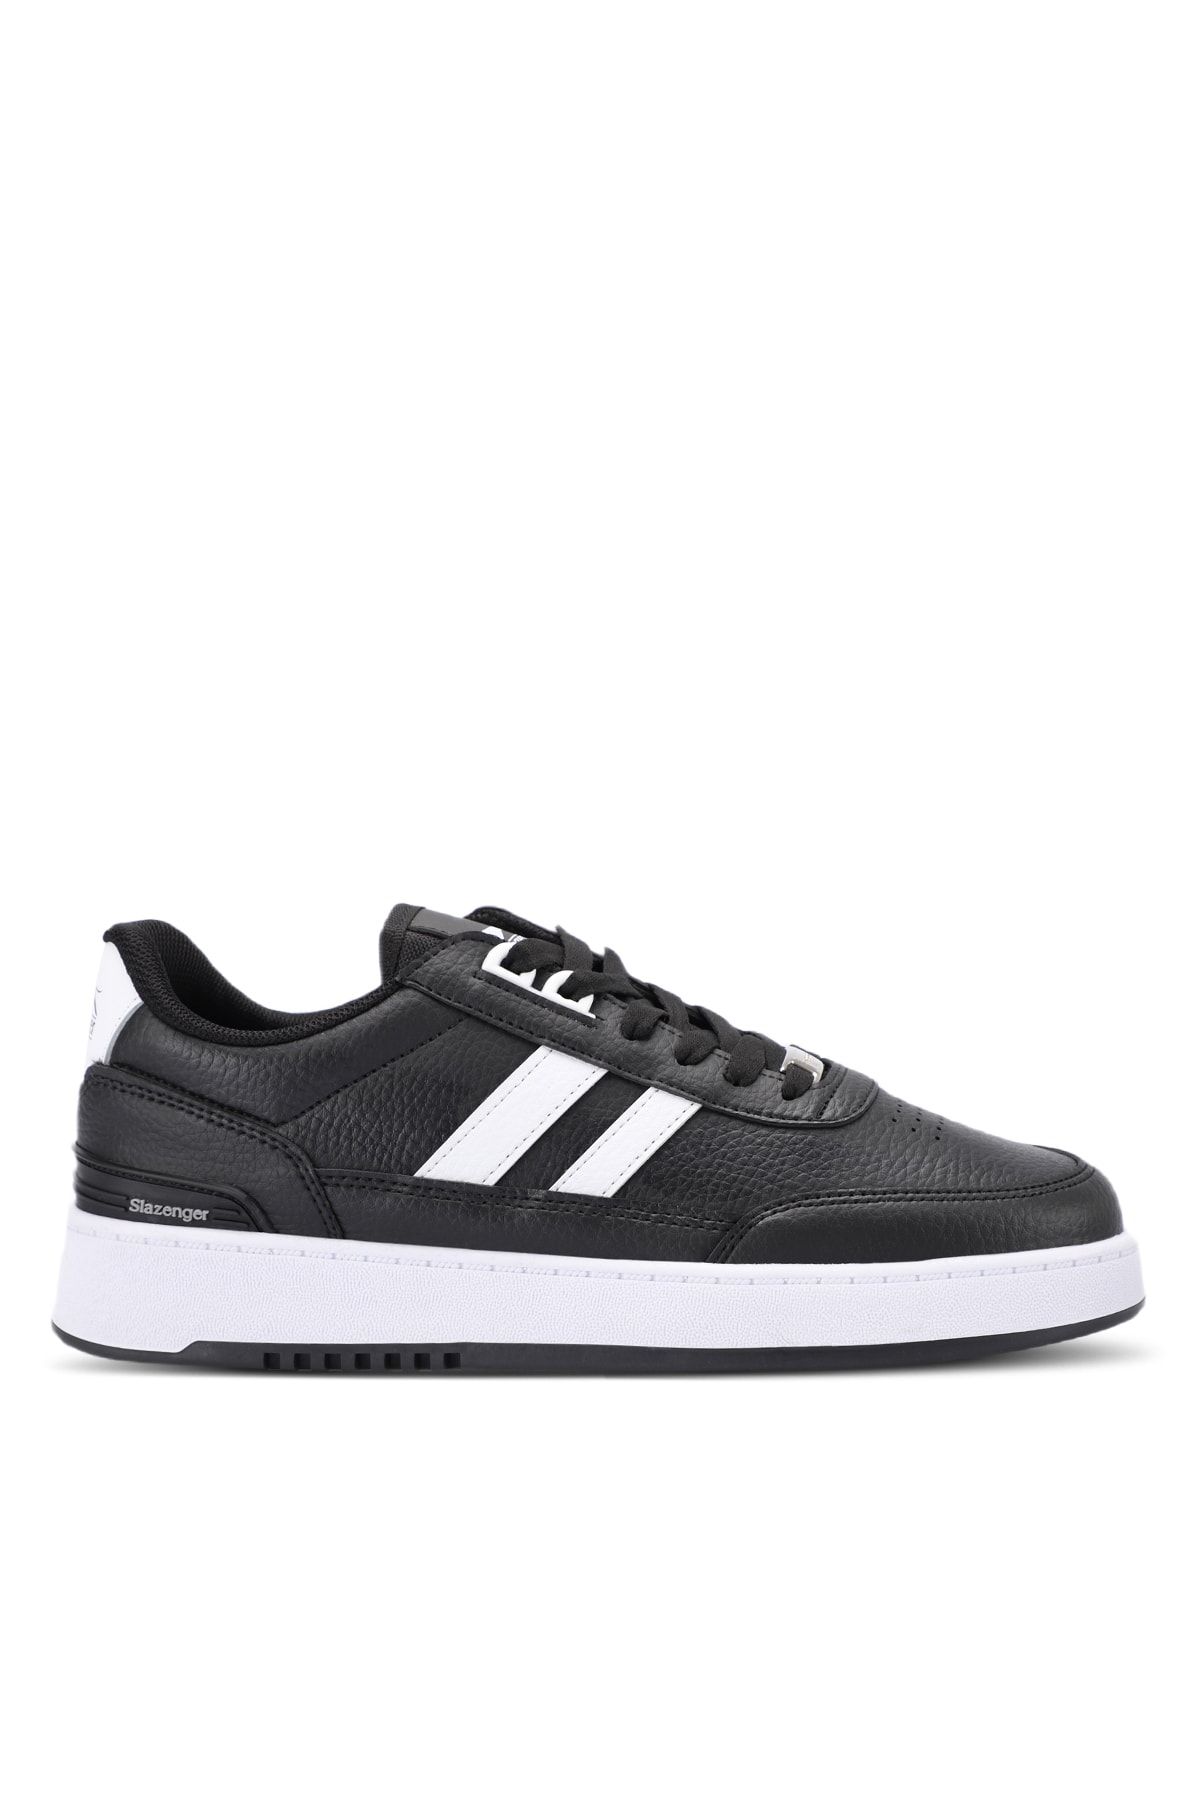 Slazenger DAPHNE Sneaker Kadın Ayakkabı Siyah / Beyaz